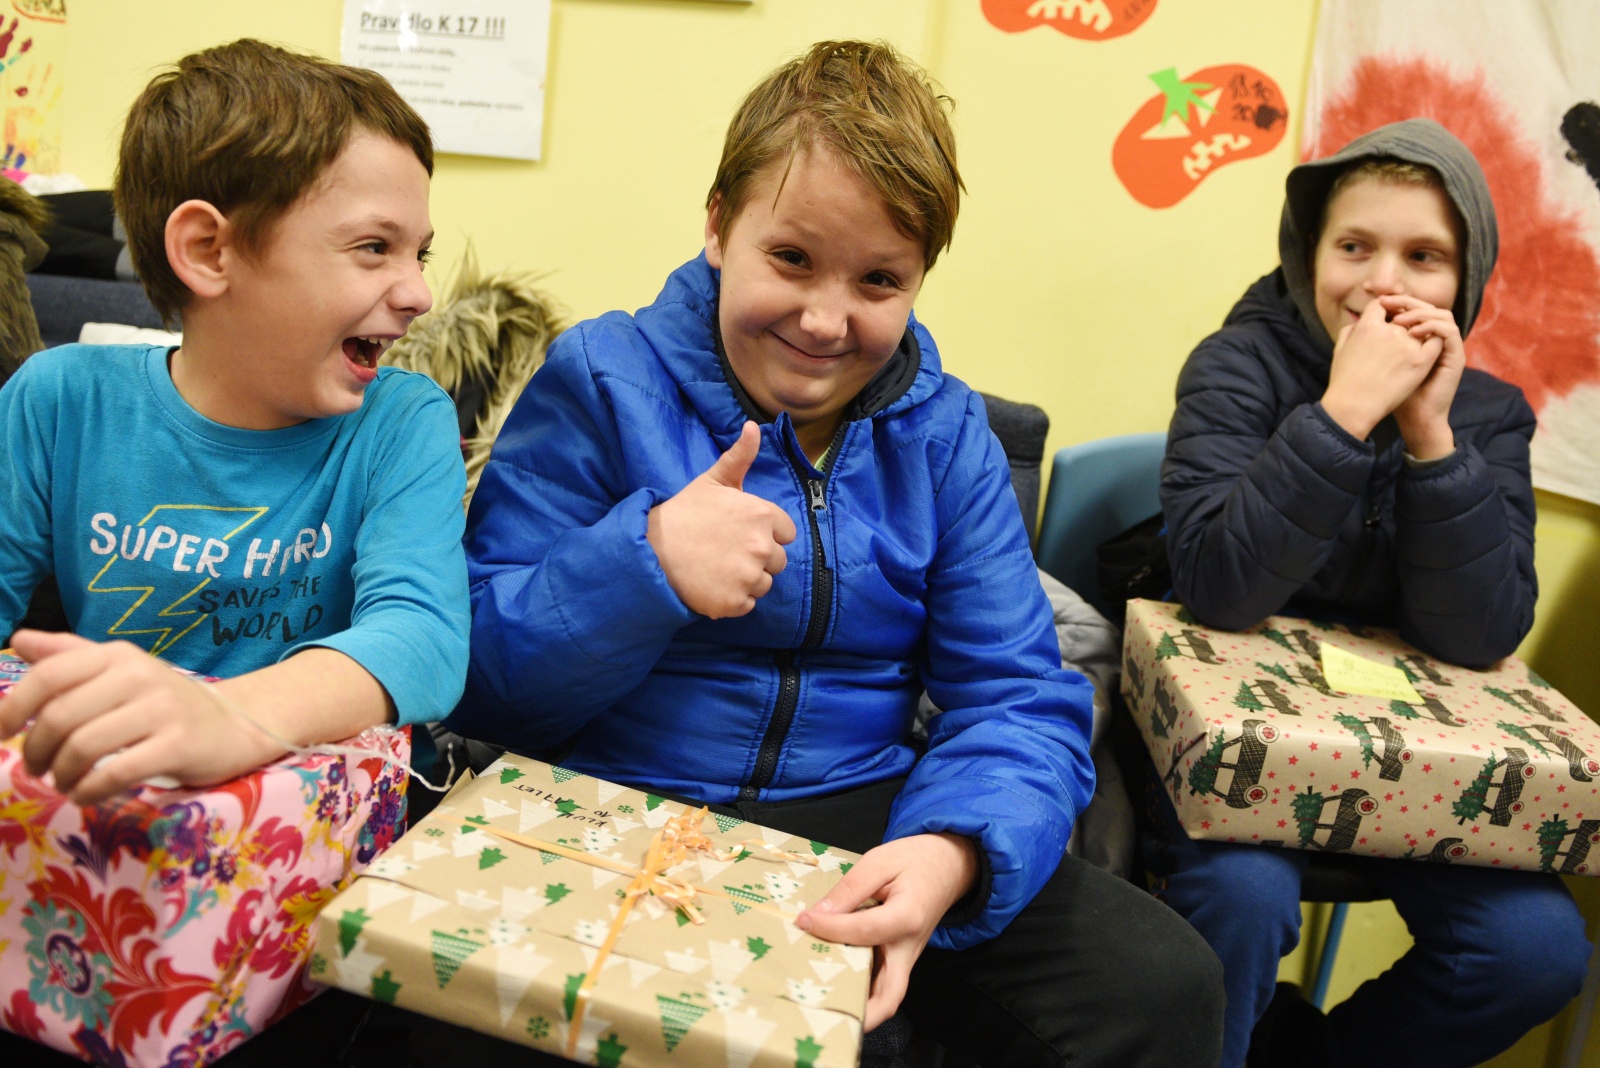 Krabice od bot. Největší sbírka vánočních dárků udělá radost dětem v nouzi  - Kutnohorský deník